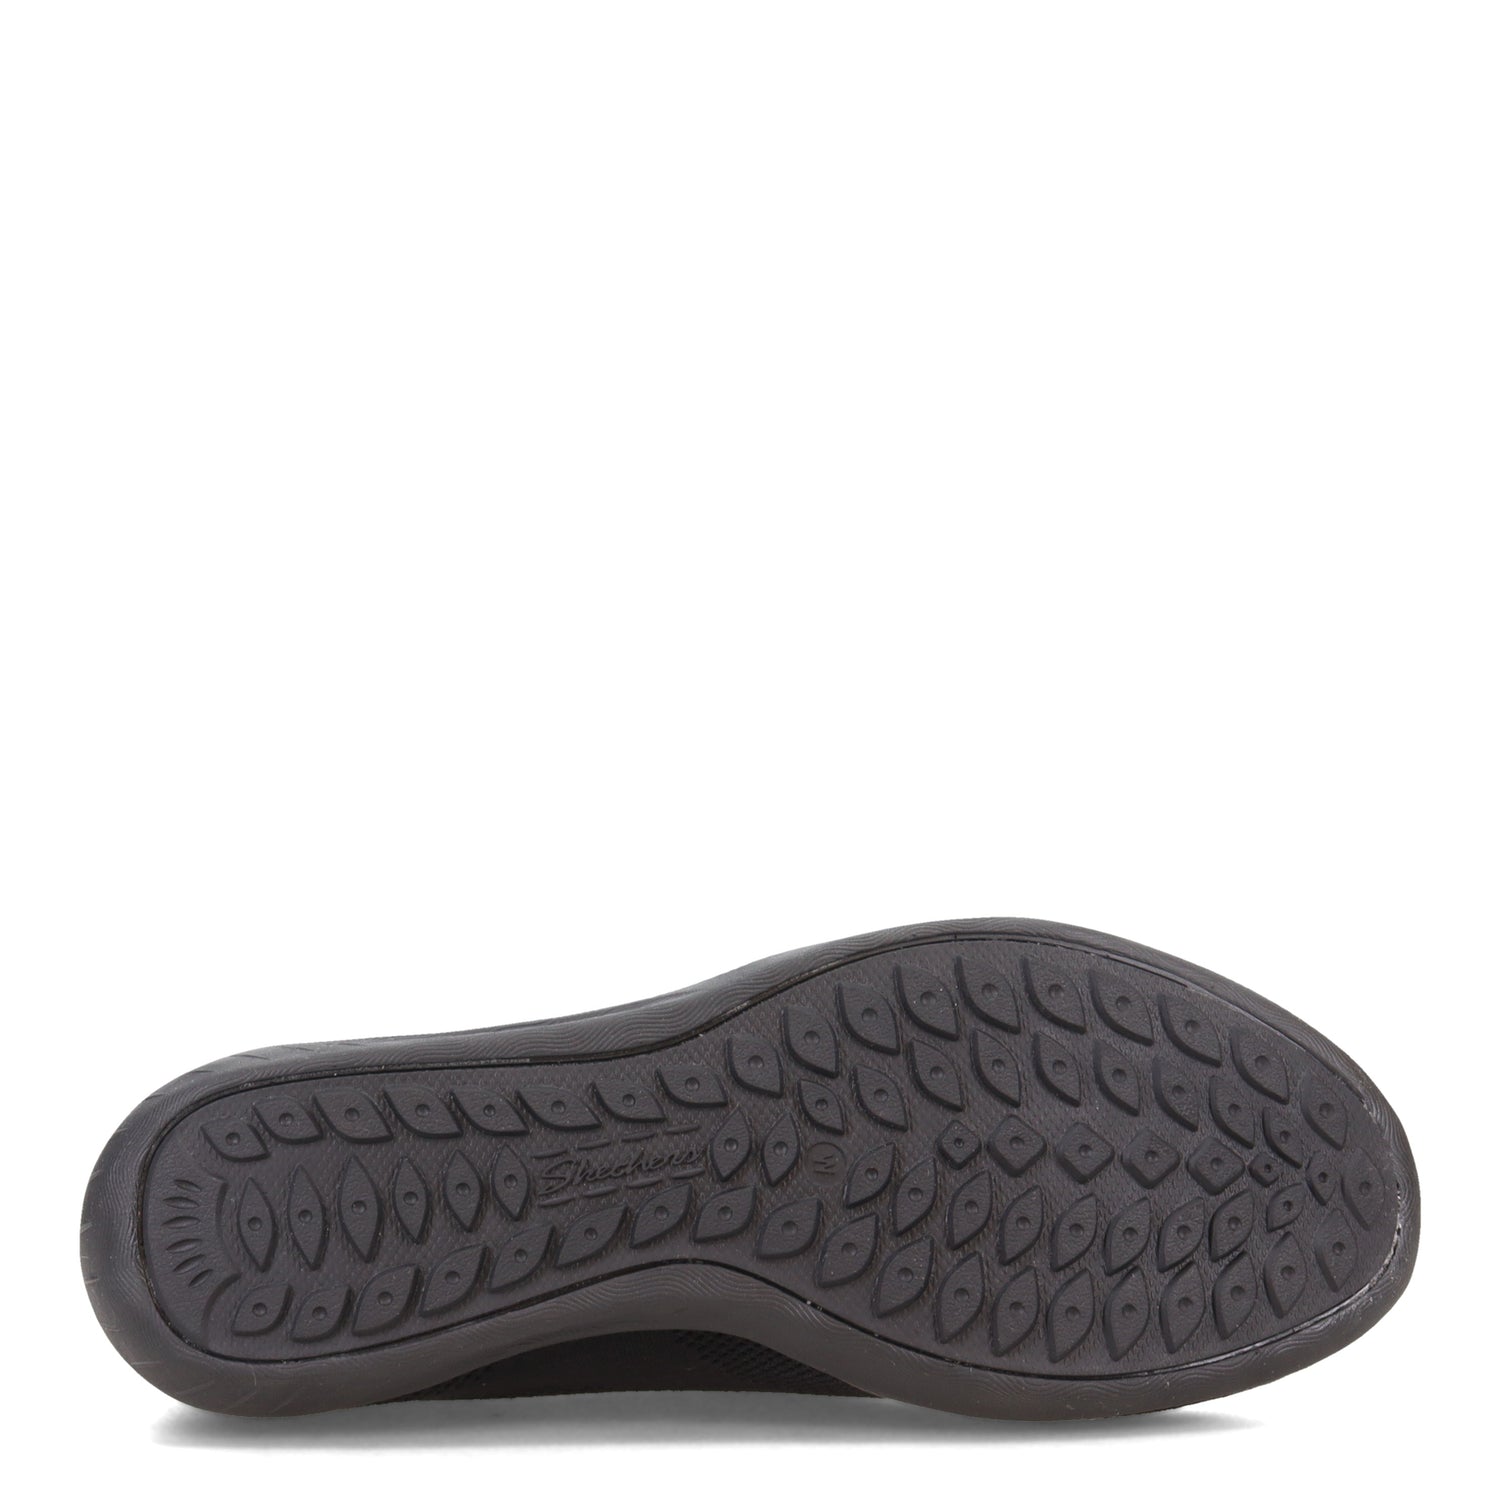 Peltz Shoes  Women's Skechers Newbury St - Every Angle Sneaker - Wide Width BLACK 100033W-BBK